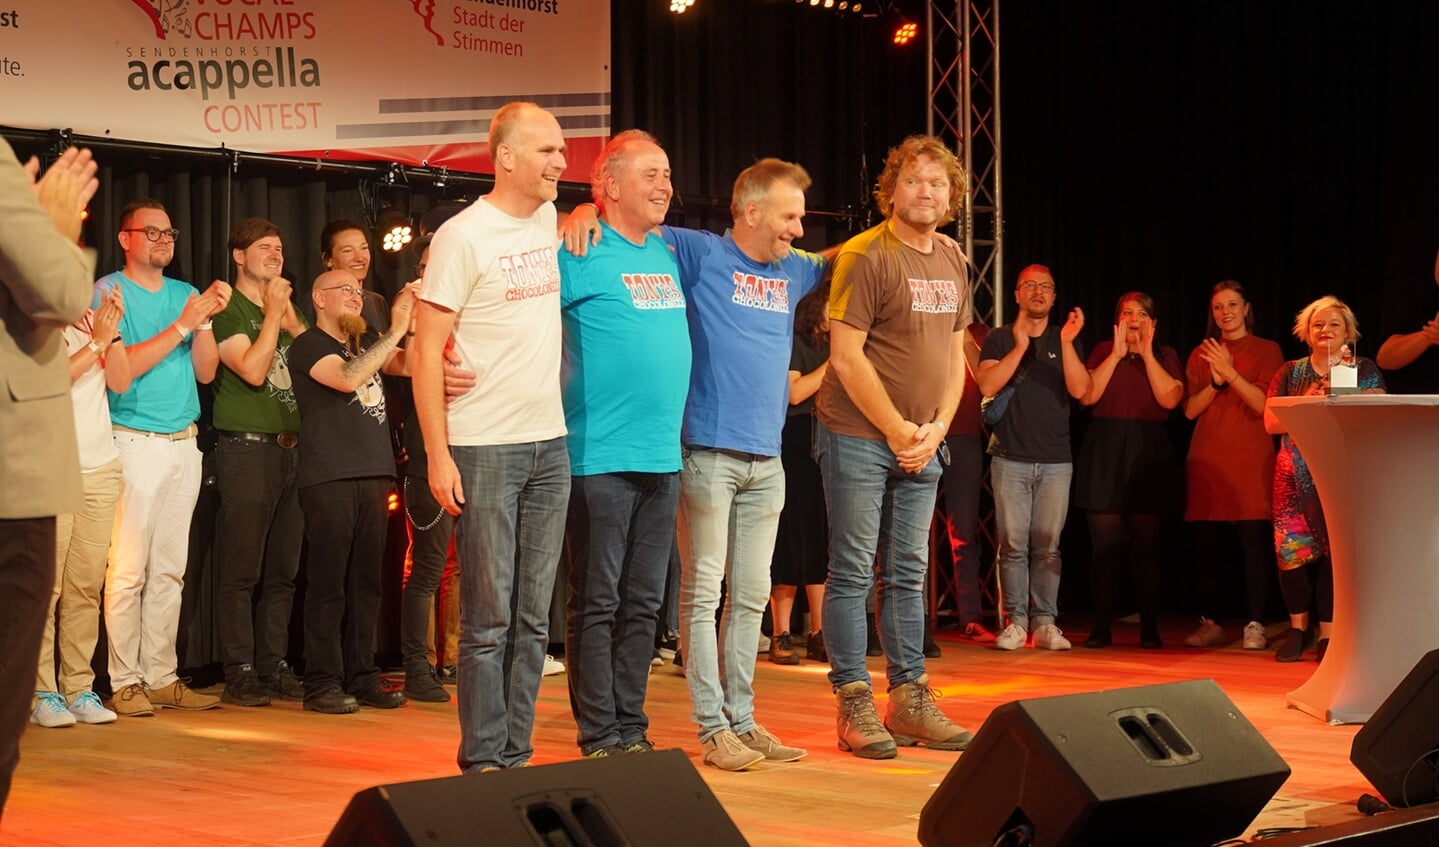 De groep VPS KeK als winnaar op het podium van het a capella festival in Sendenhorst. Foto: Michael Gornig